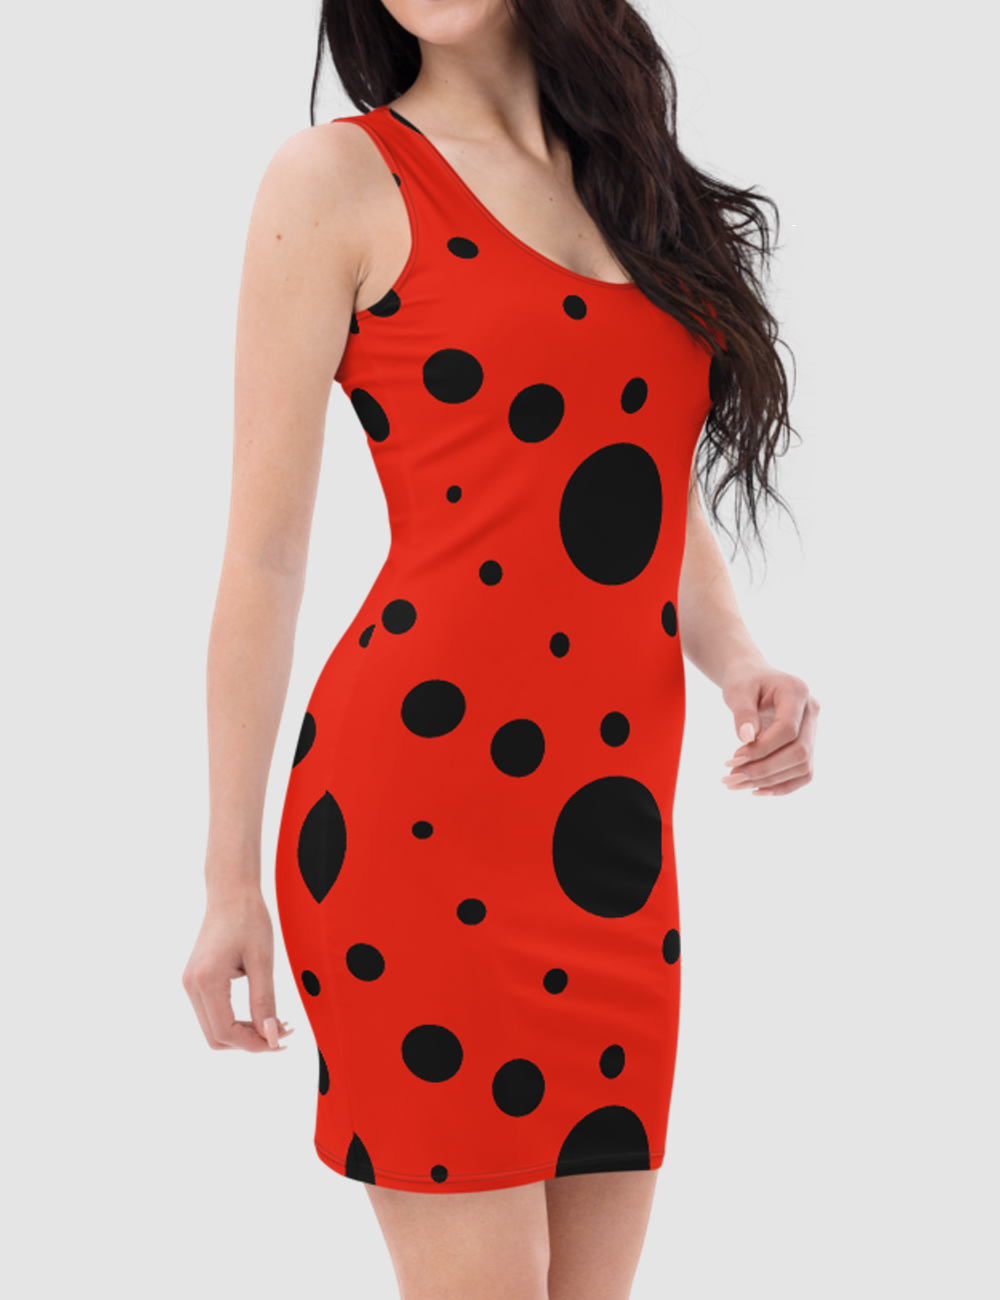 Classic Ladybug | Women's Sleeveless Fitted Sublimated Dress OniTakai